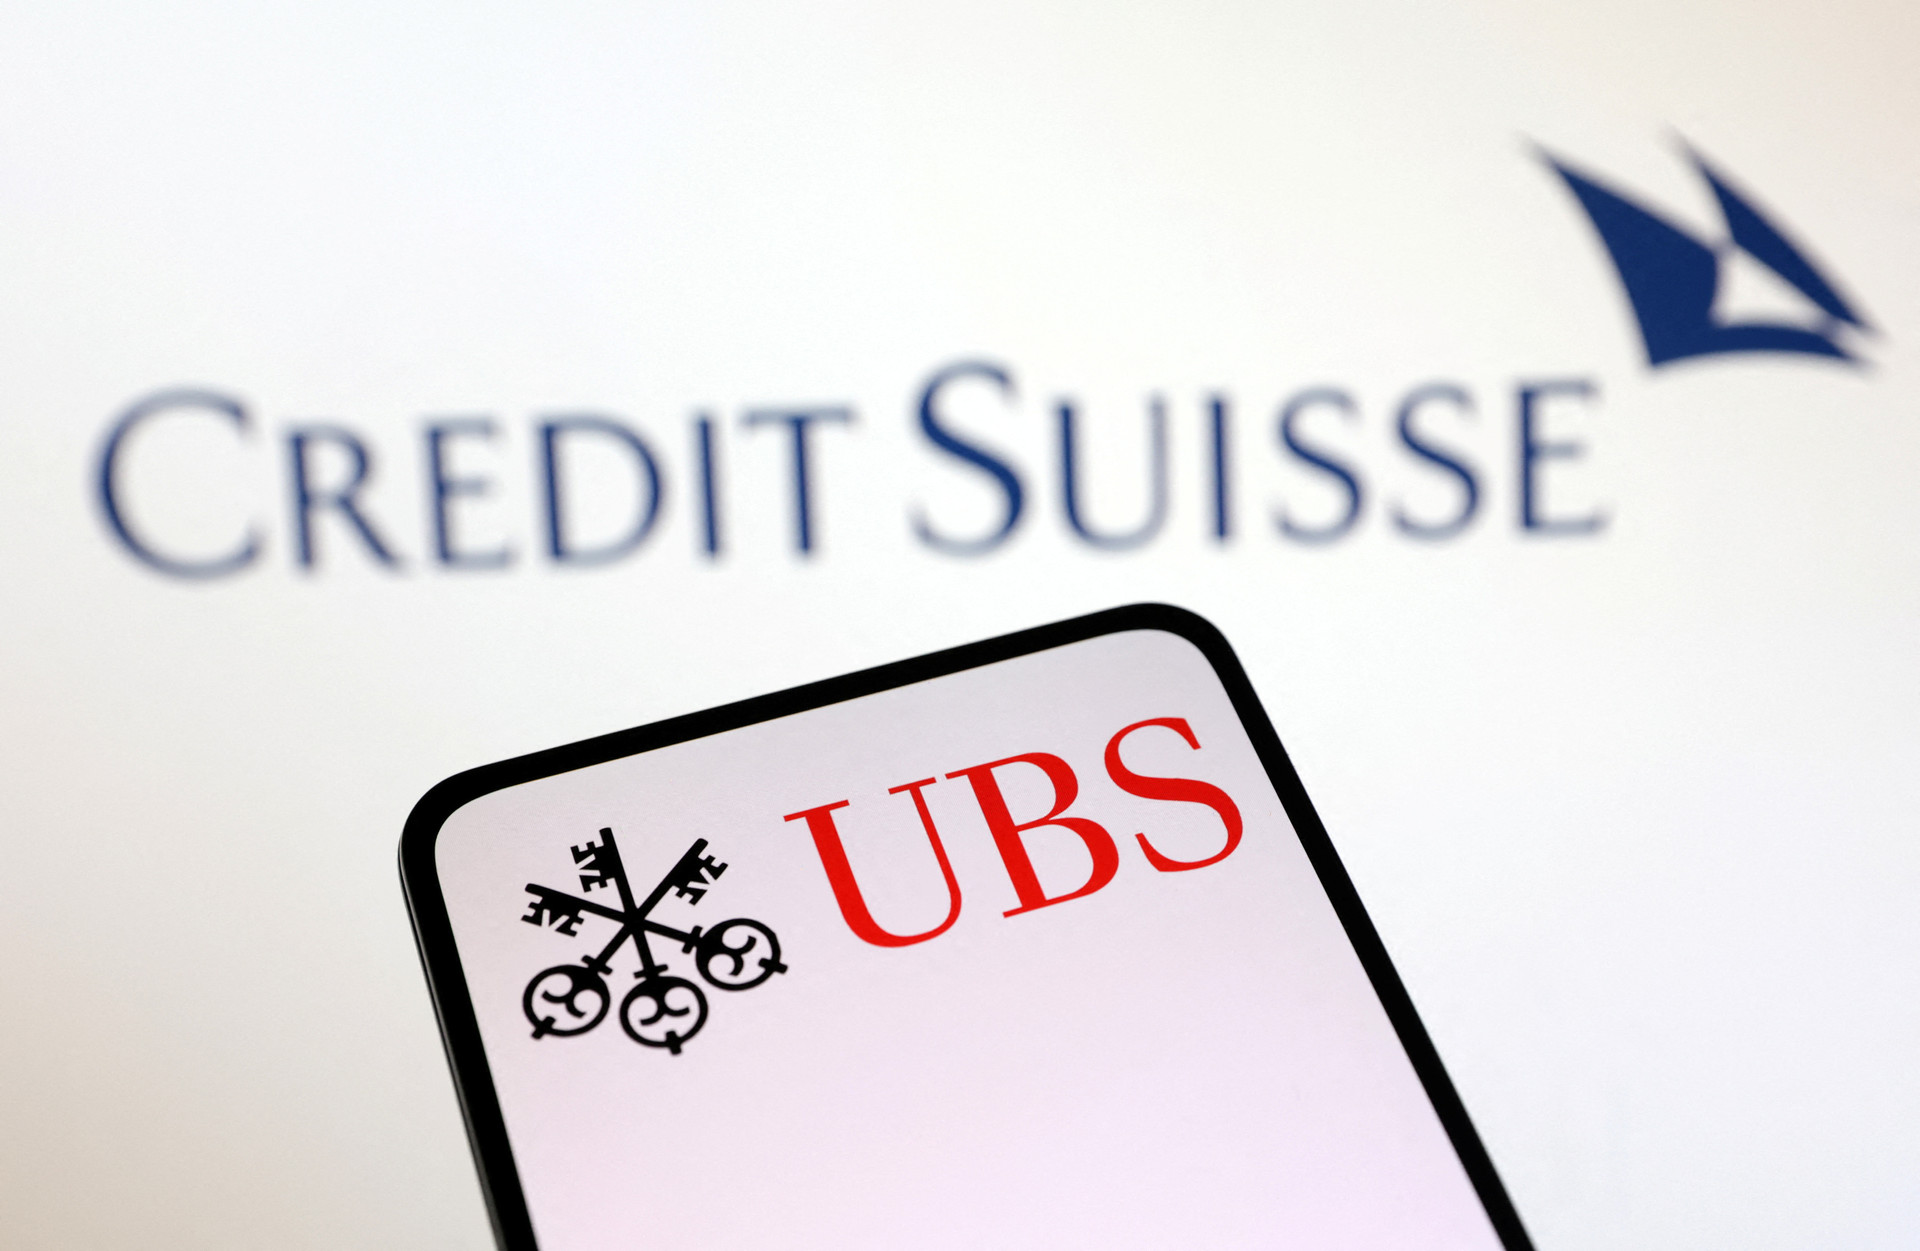 NÓNG: UBS đồng ý mua lại Credit Suisse với giá 3,2 tỷ USD - Ảnh 1.